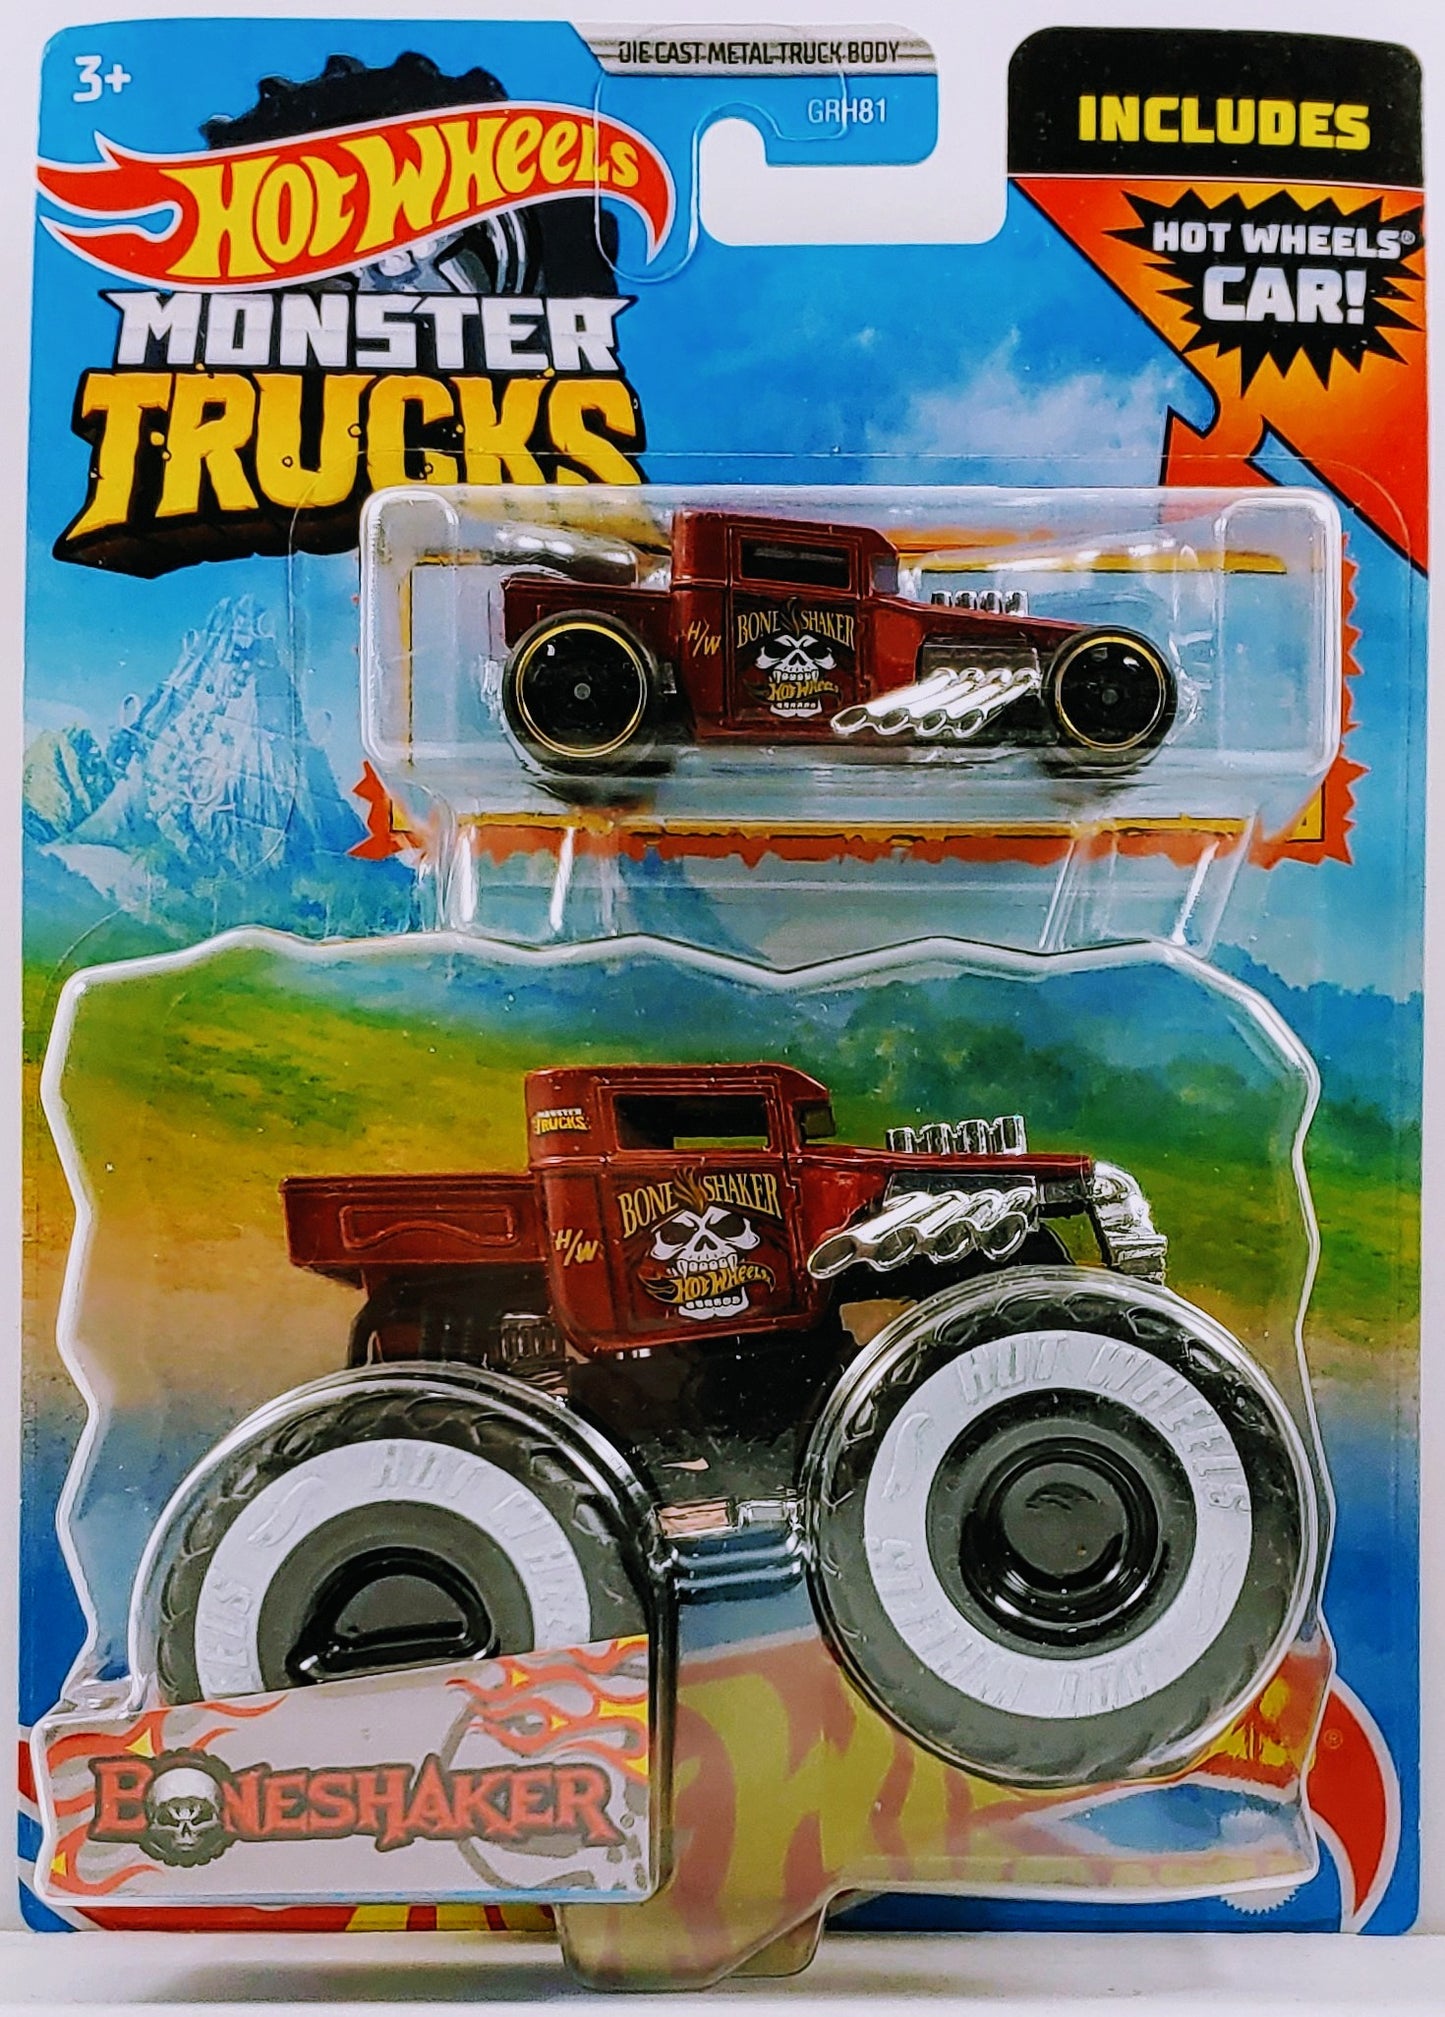 Hot Wheels 2022 - Monster Trucks 2 Pack - Bone Shaker Monster - Dark Red - White Walls - Black Roof - Bone Shaker Basic - Dark Red - Steelie Wheels